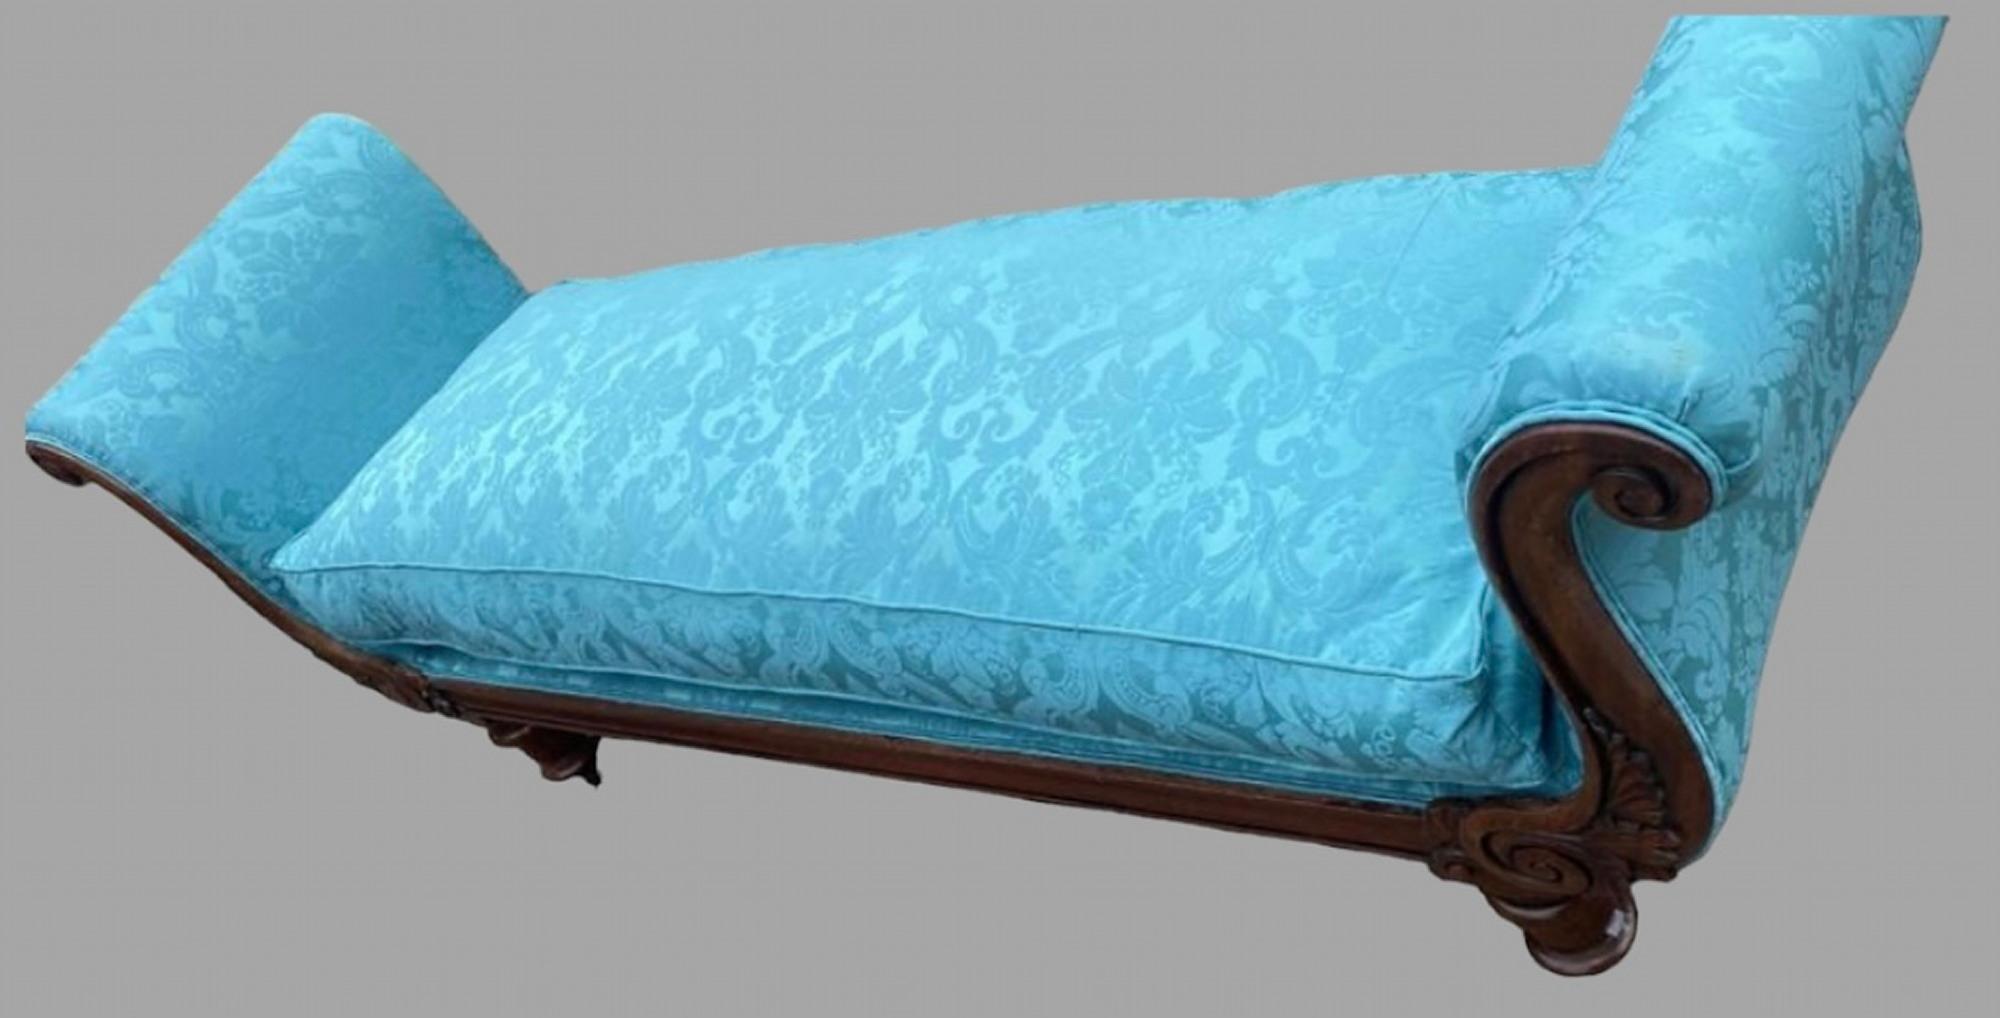 Ein französisches Lit Bateau aus dem 19. Jahrhundert mit zwei geschwungenen Enden, auf gedrechselten Beinen und Rollen und professionell neu gepolstert mit einem schönen blauen Seidendamast. Sitzhöhe 55cm

Lit Bateau - französisches Bett, meist in